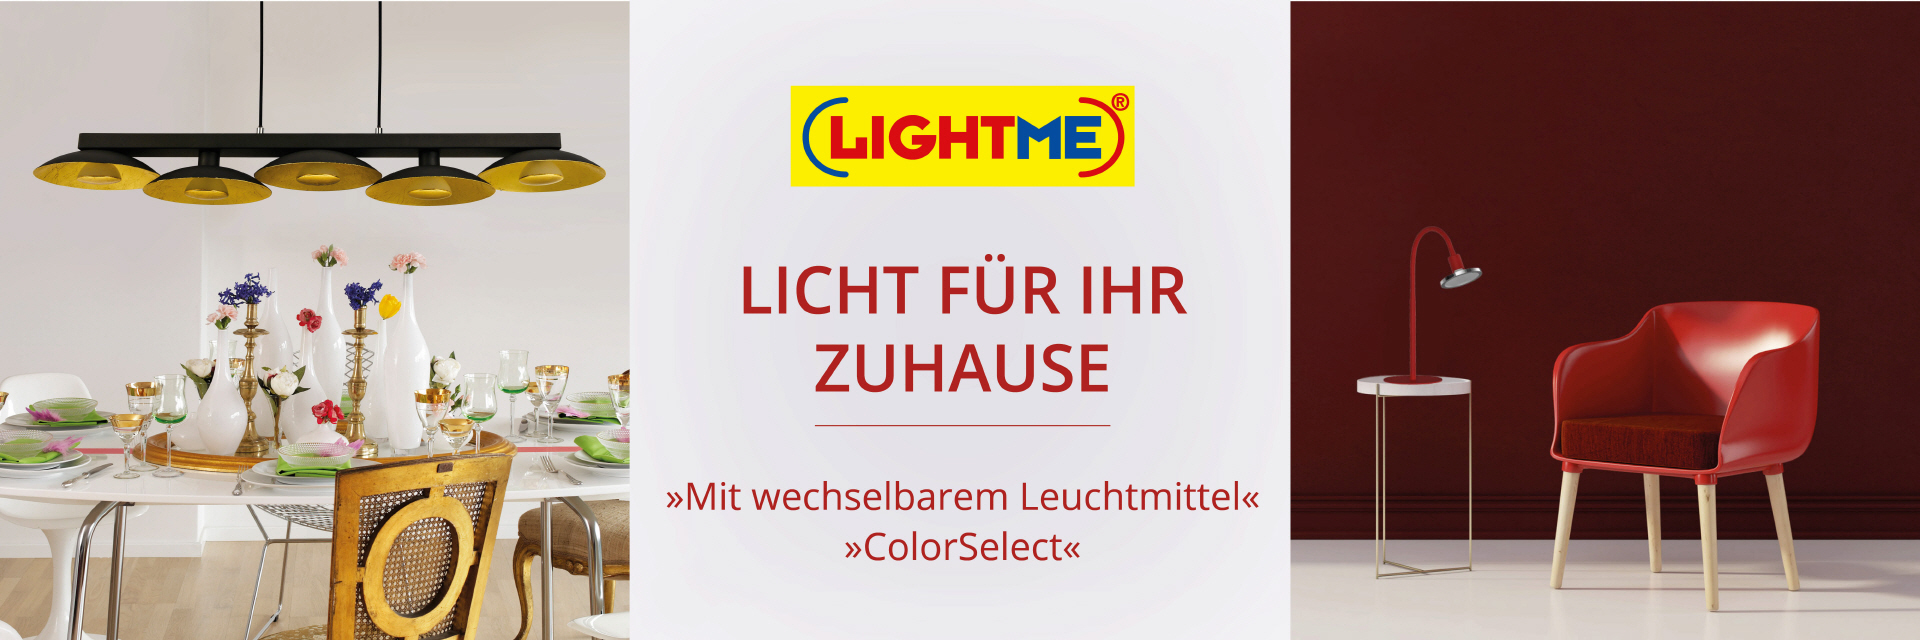 LIGHTME - LED-Leuchten und Lampen von der IDV GmbH